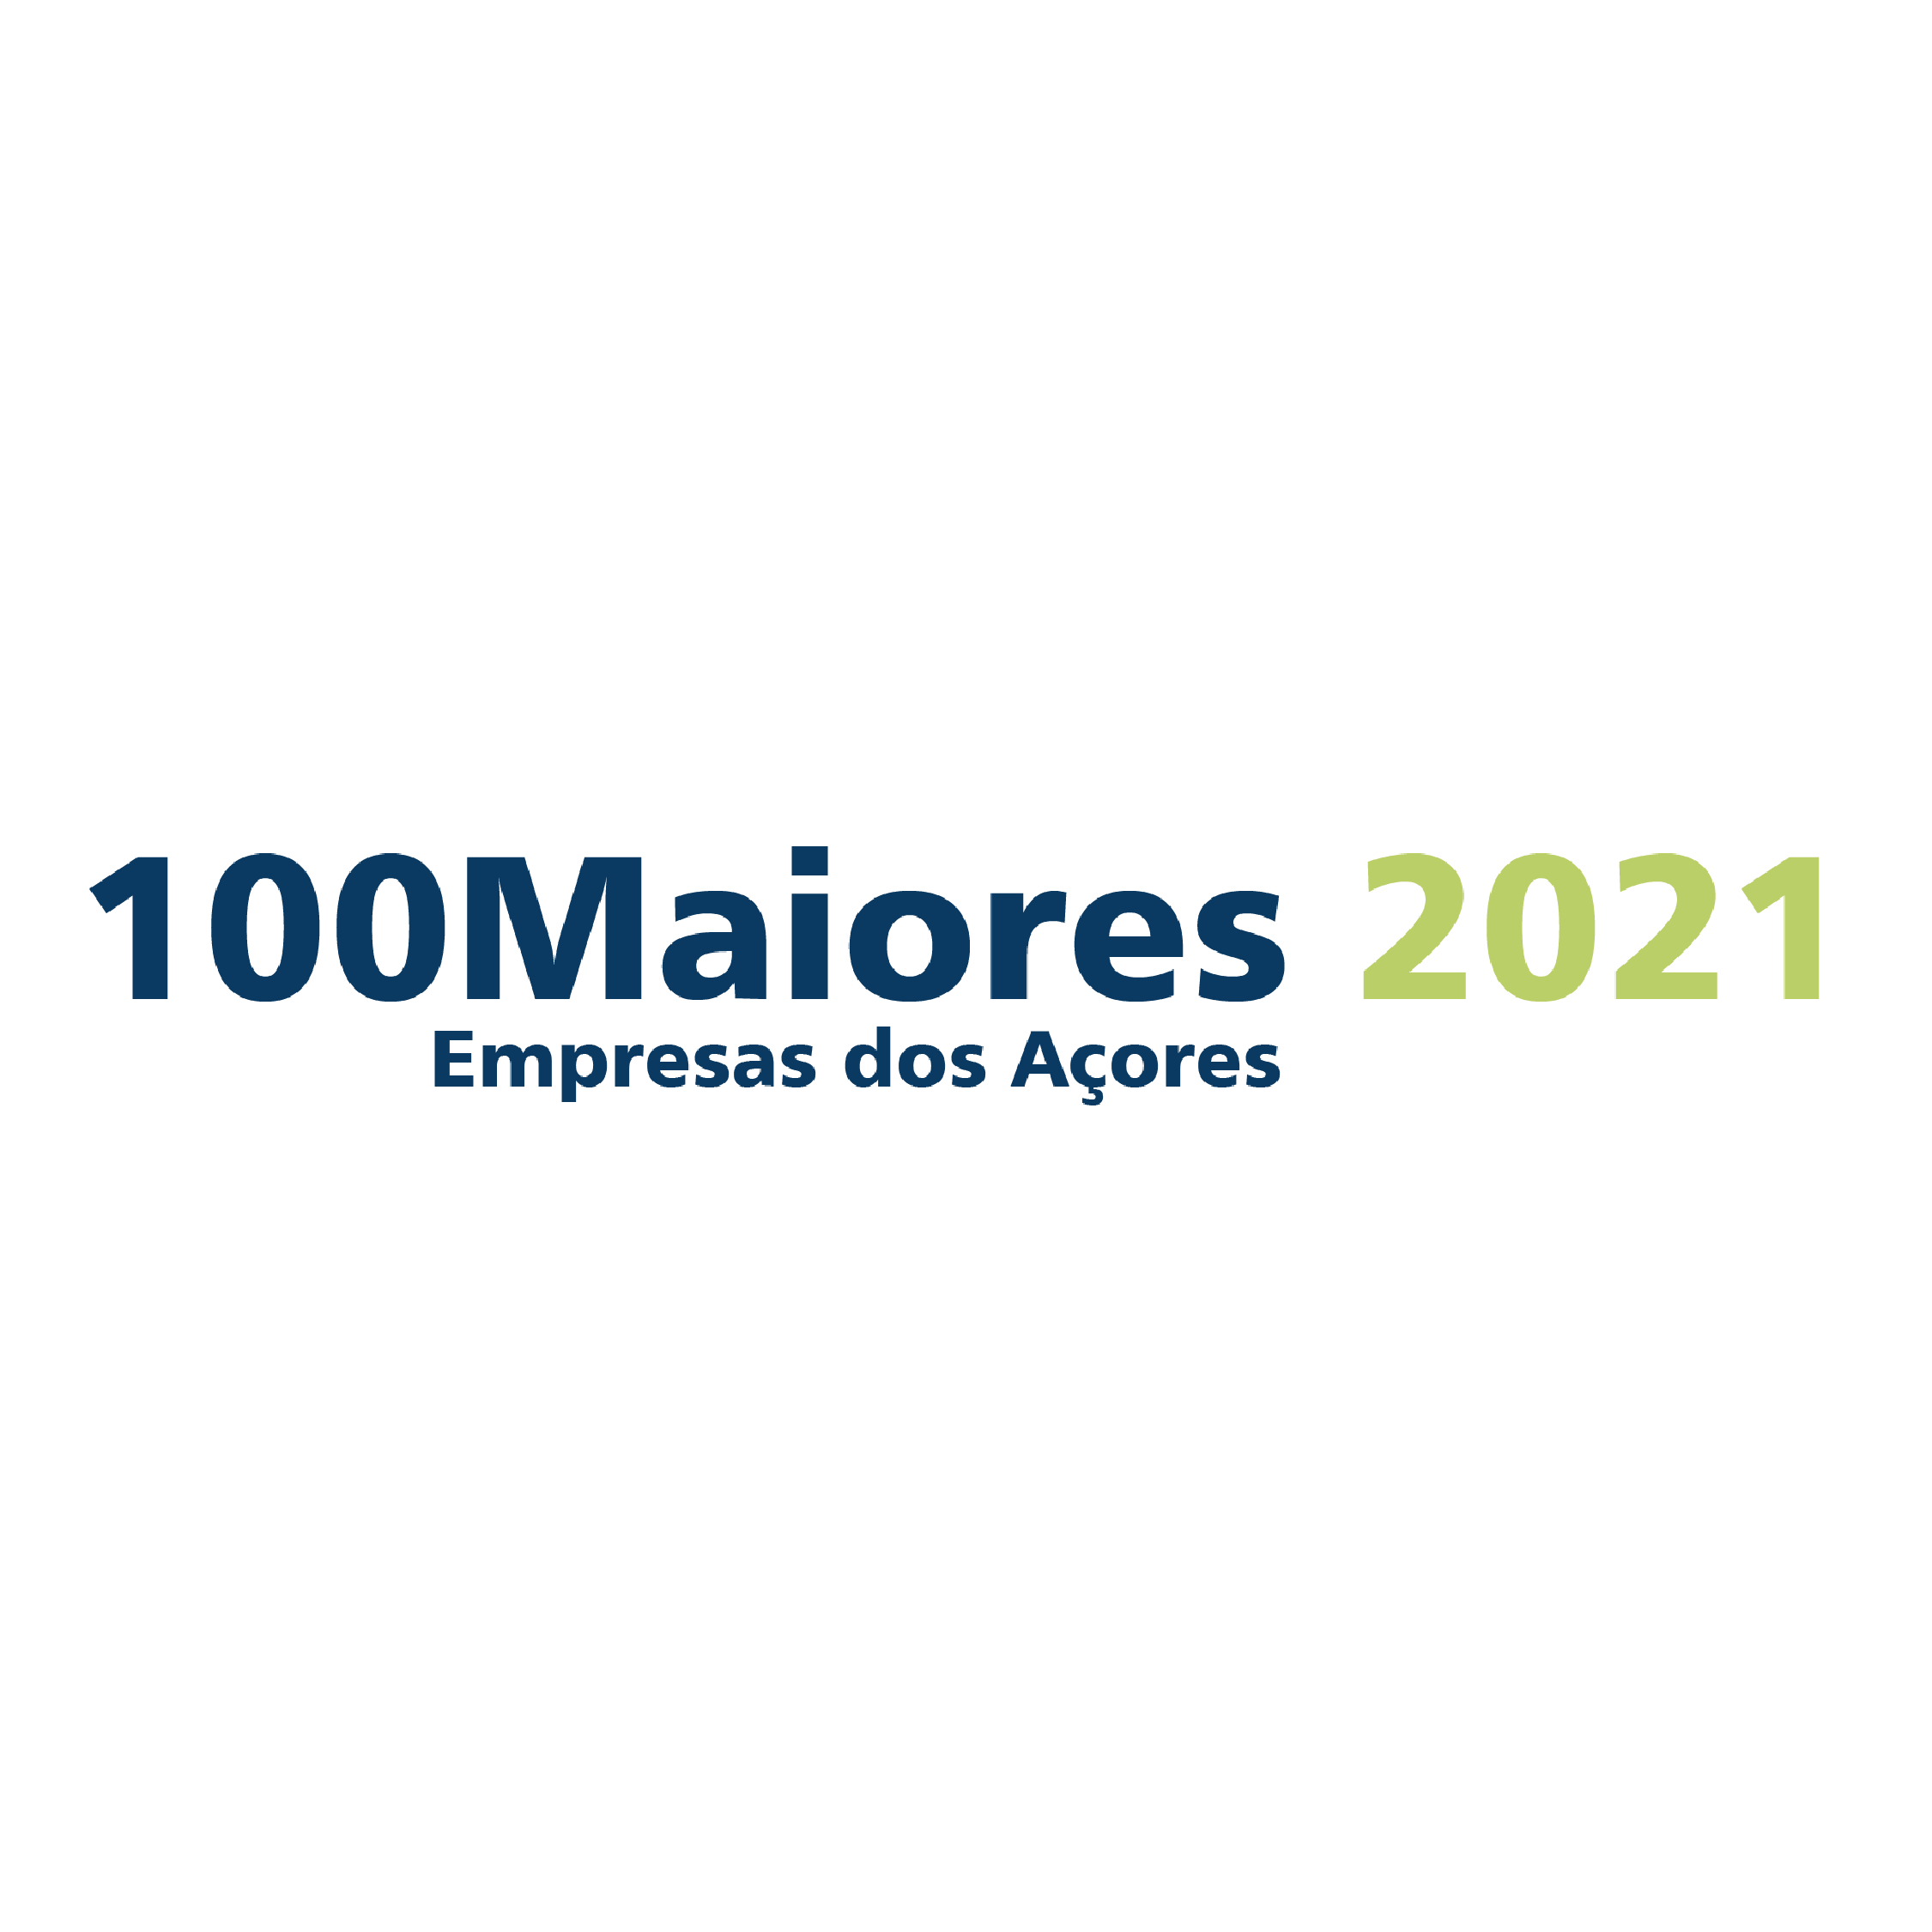 100 Maiores Empresas dos Açores 2021